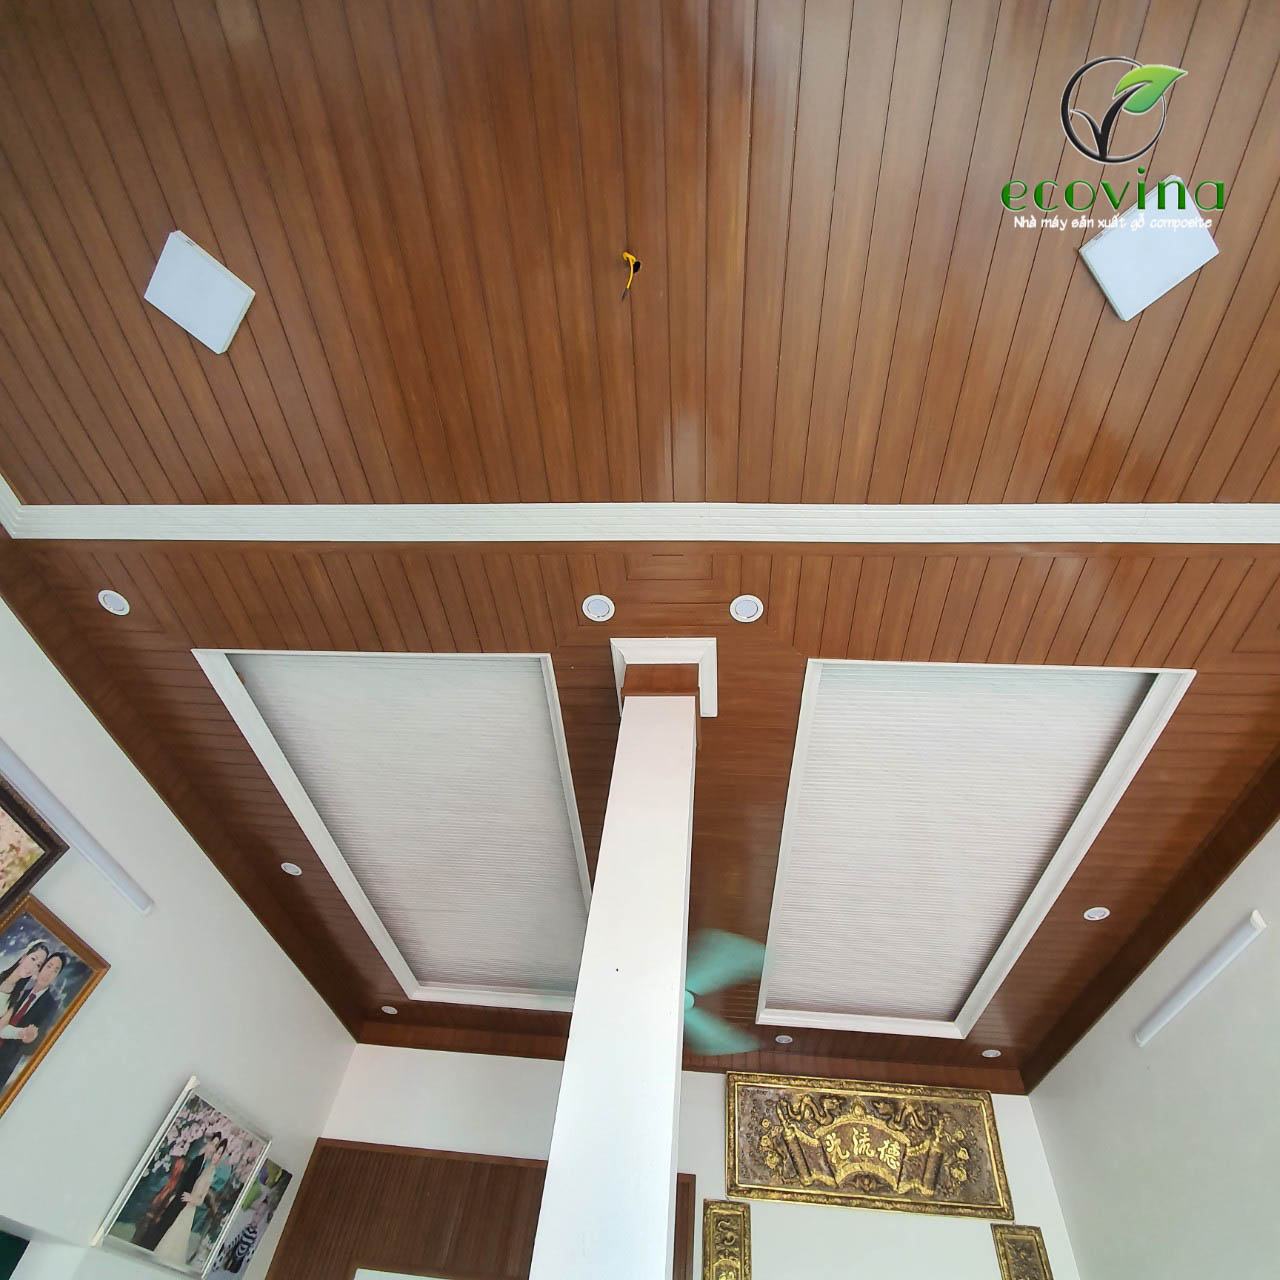 Thi công tấm ốp trần gỗ nhựa composite tại Tân Yên - Bắc Giang ...